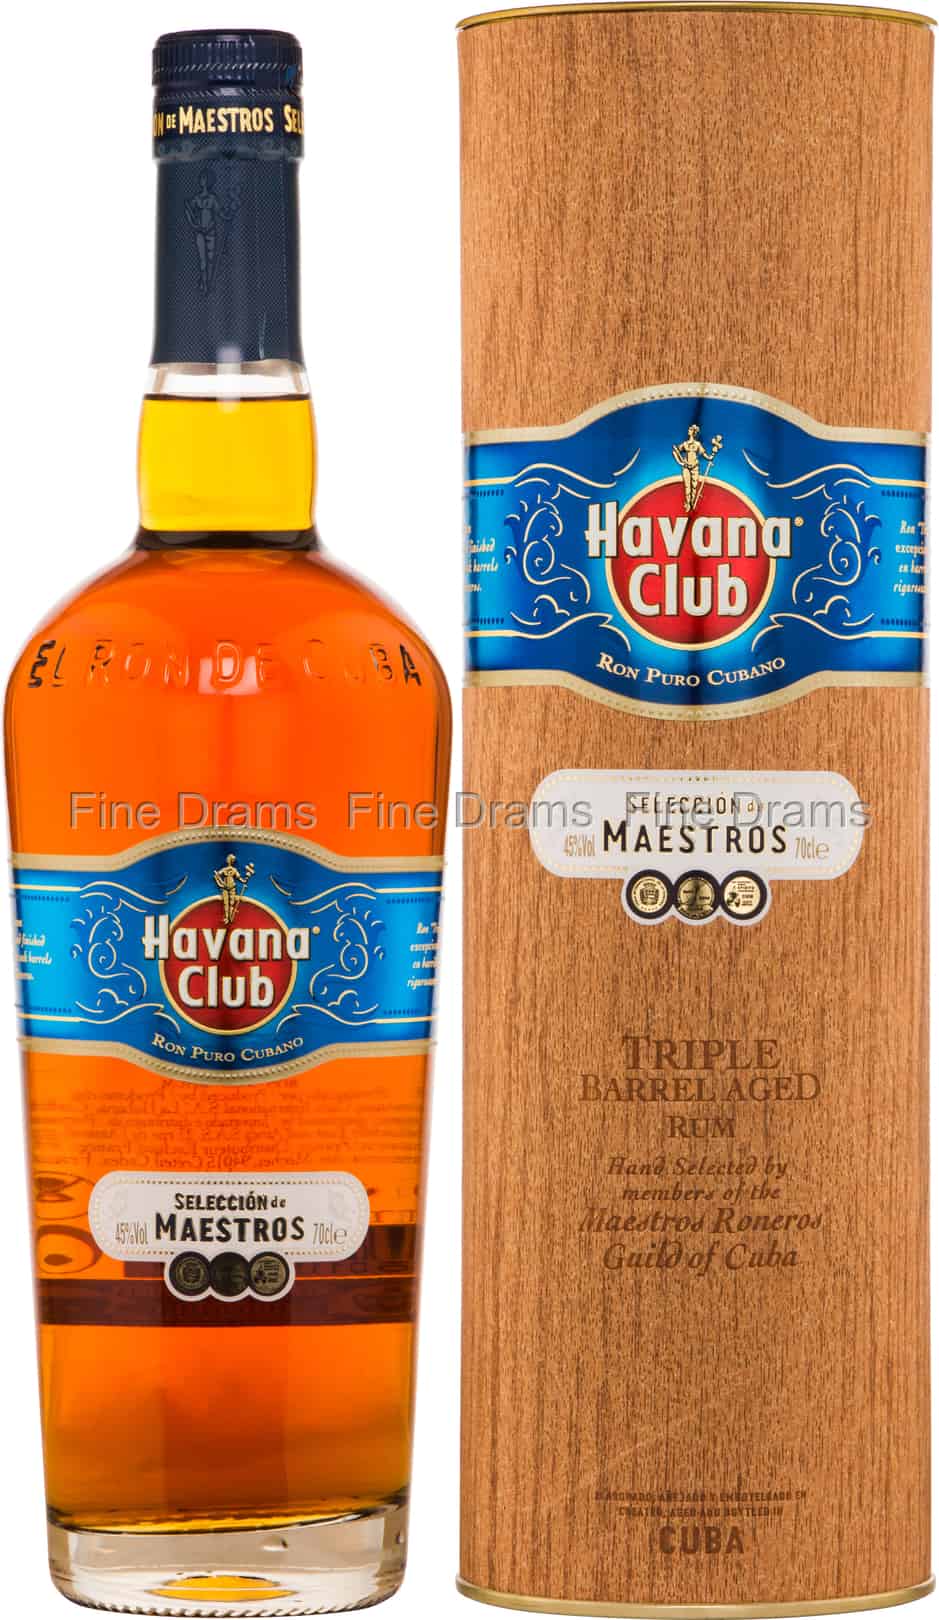 Havana Club Seleccion de Maestros Rum